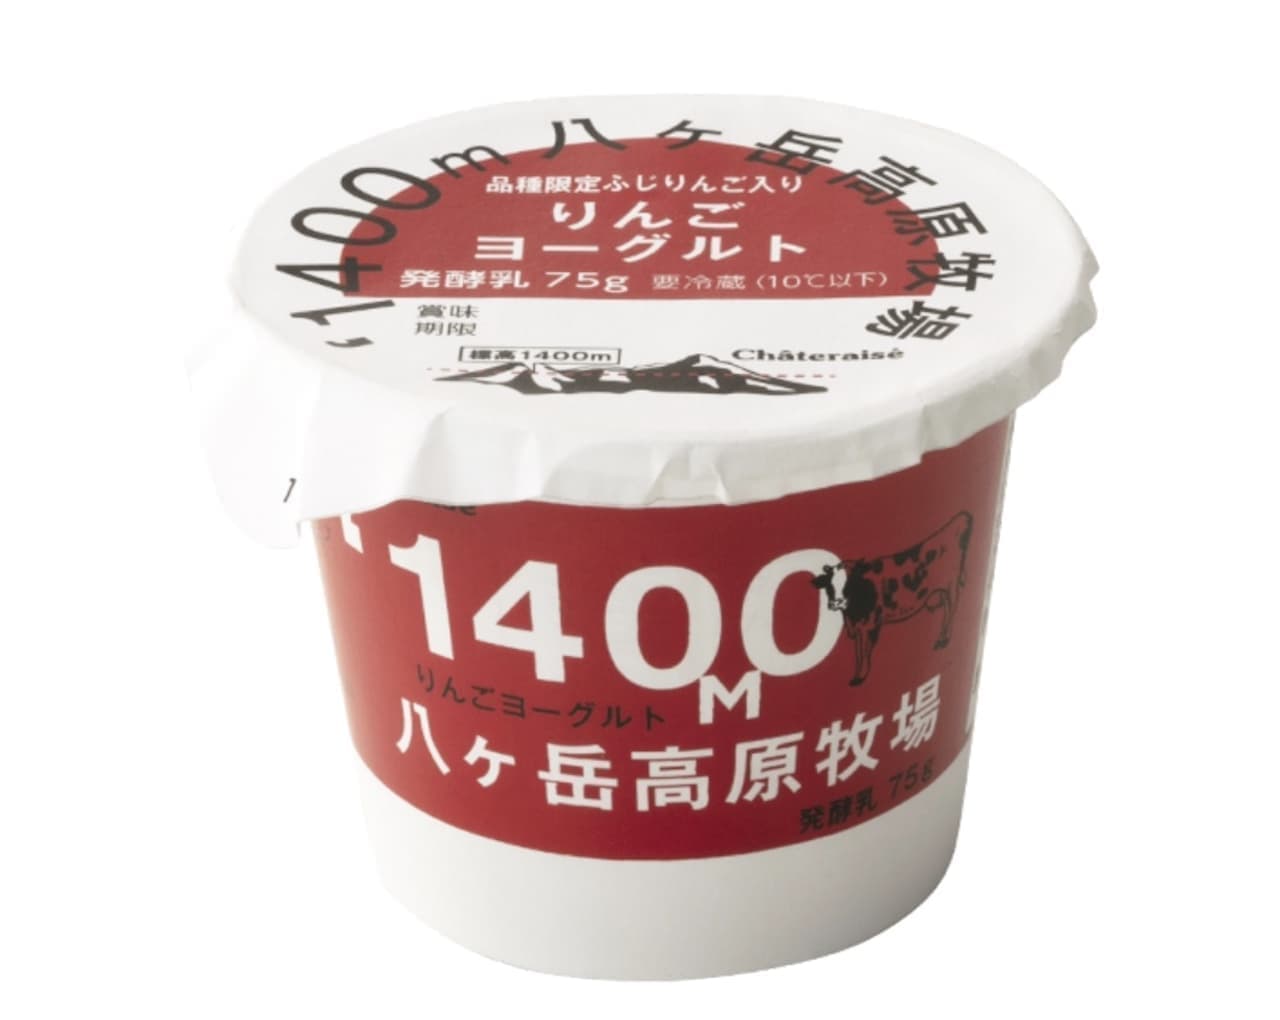 Chateraise "Yatsugatake Plateau Ranch Apple Yogurt"